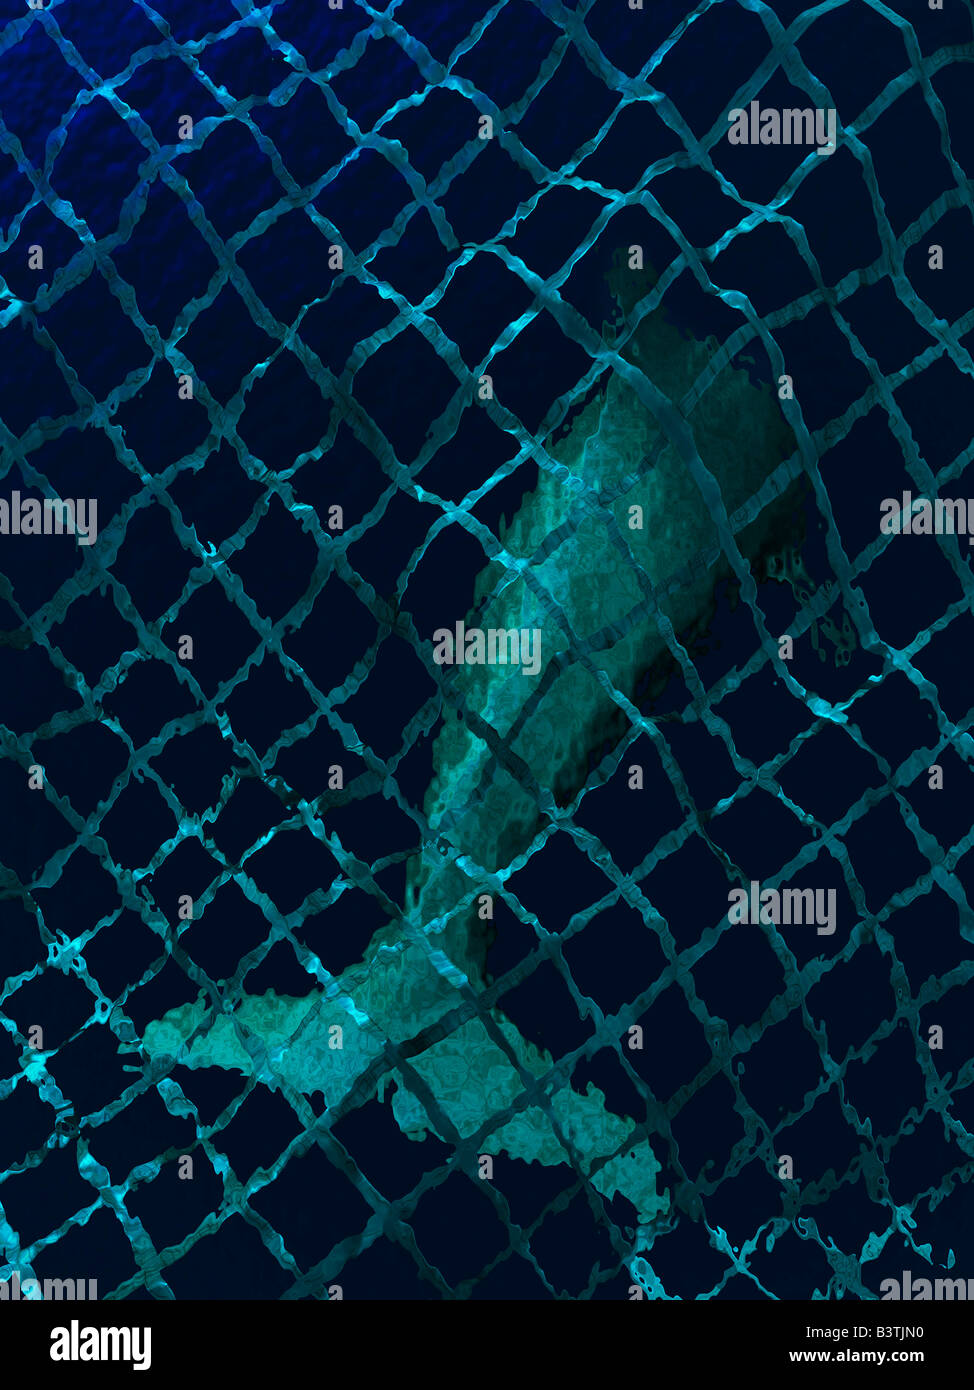 Darstellung der Delphin im Netz unter Wasser gefangen Stockfotografie -  Alamy